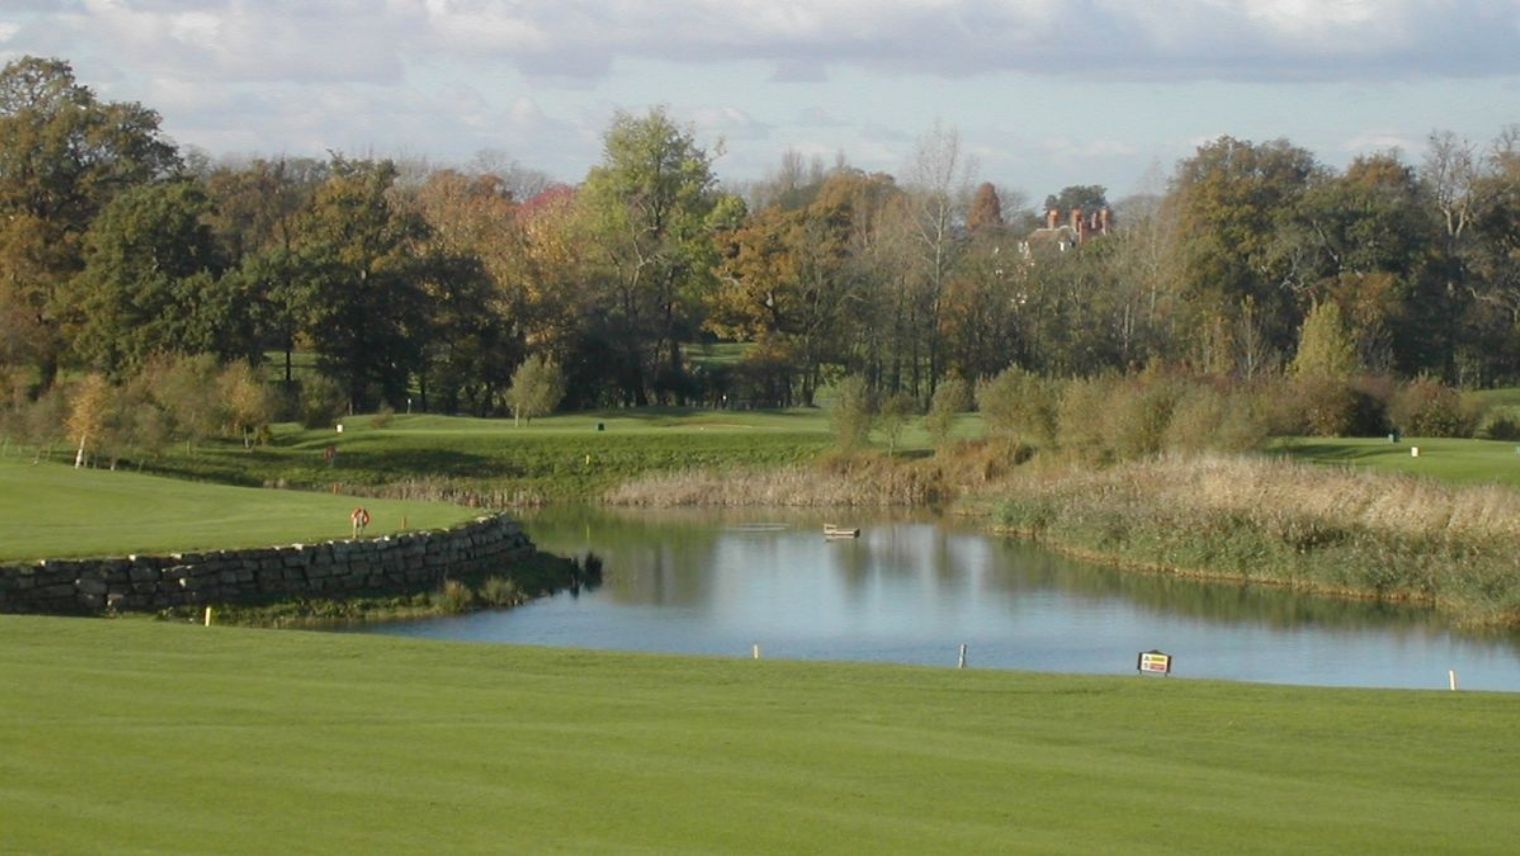 Clandon Regis Golf Course